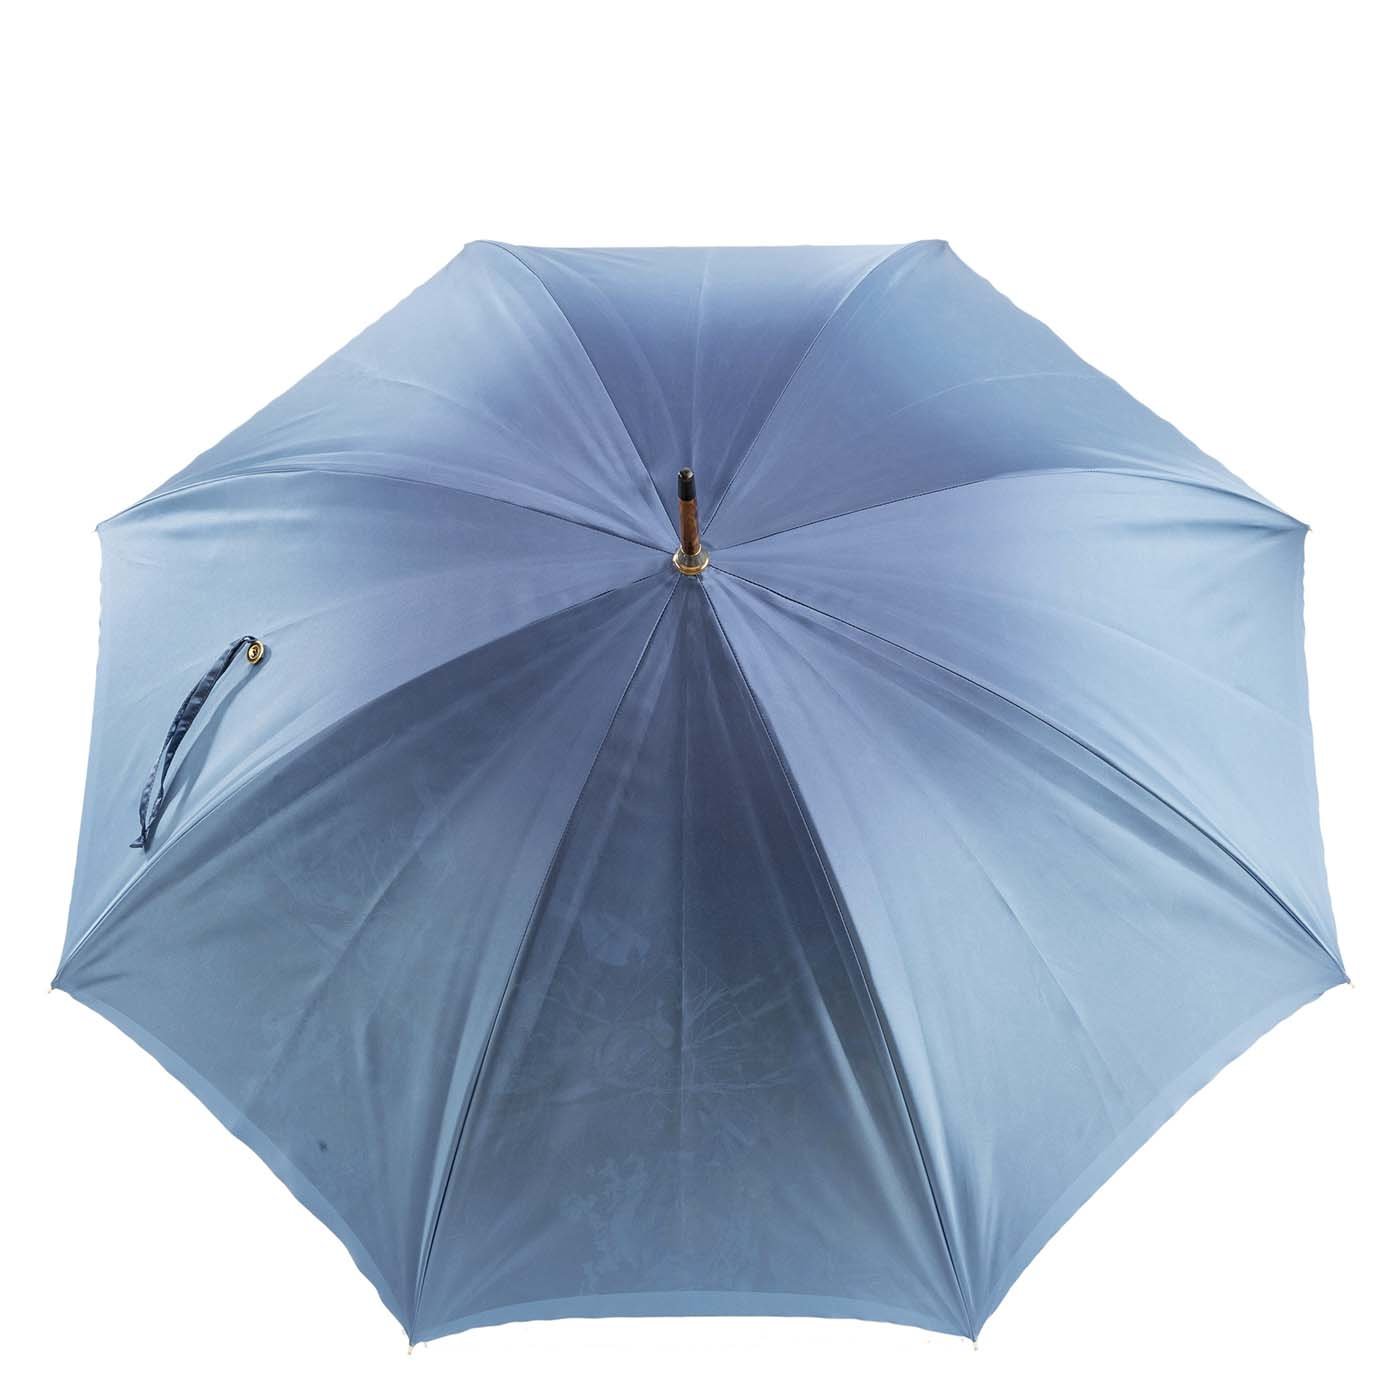 Natur Regenschirm mit Besenholzgriff - Doppeltuch - Alternative Ansicht 4